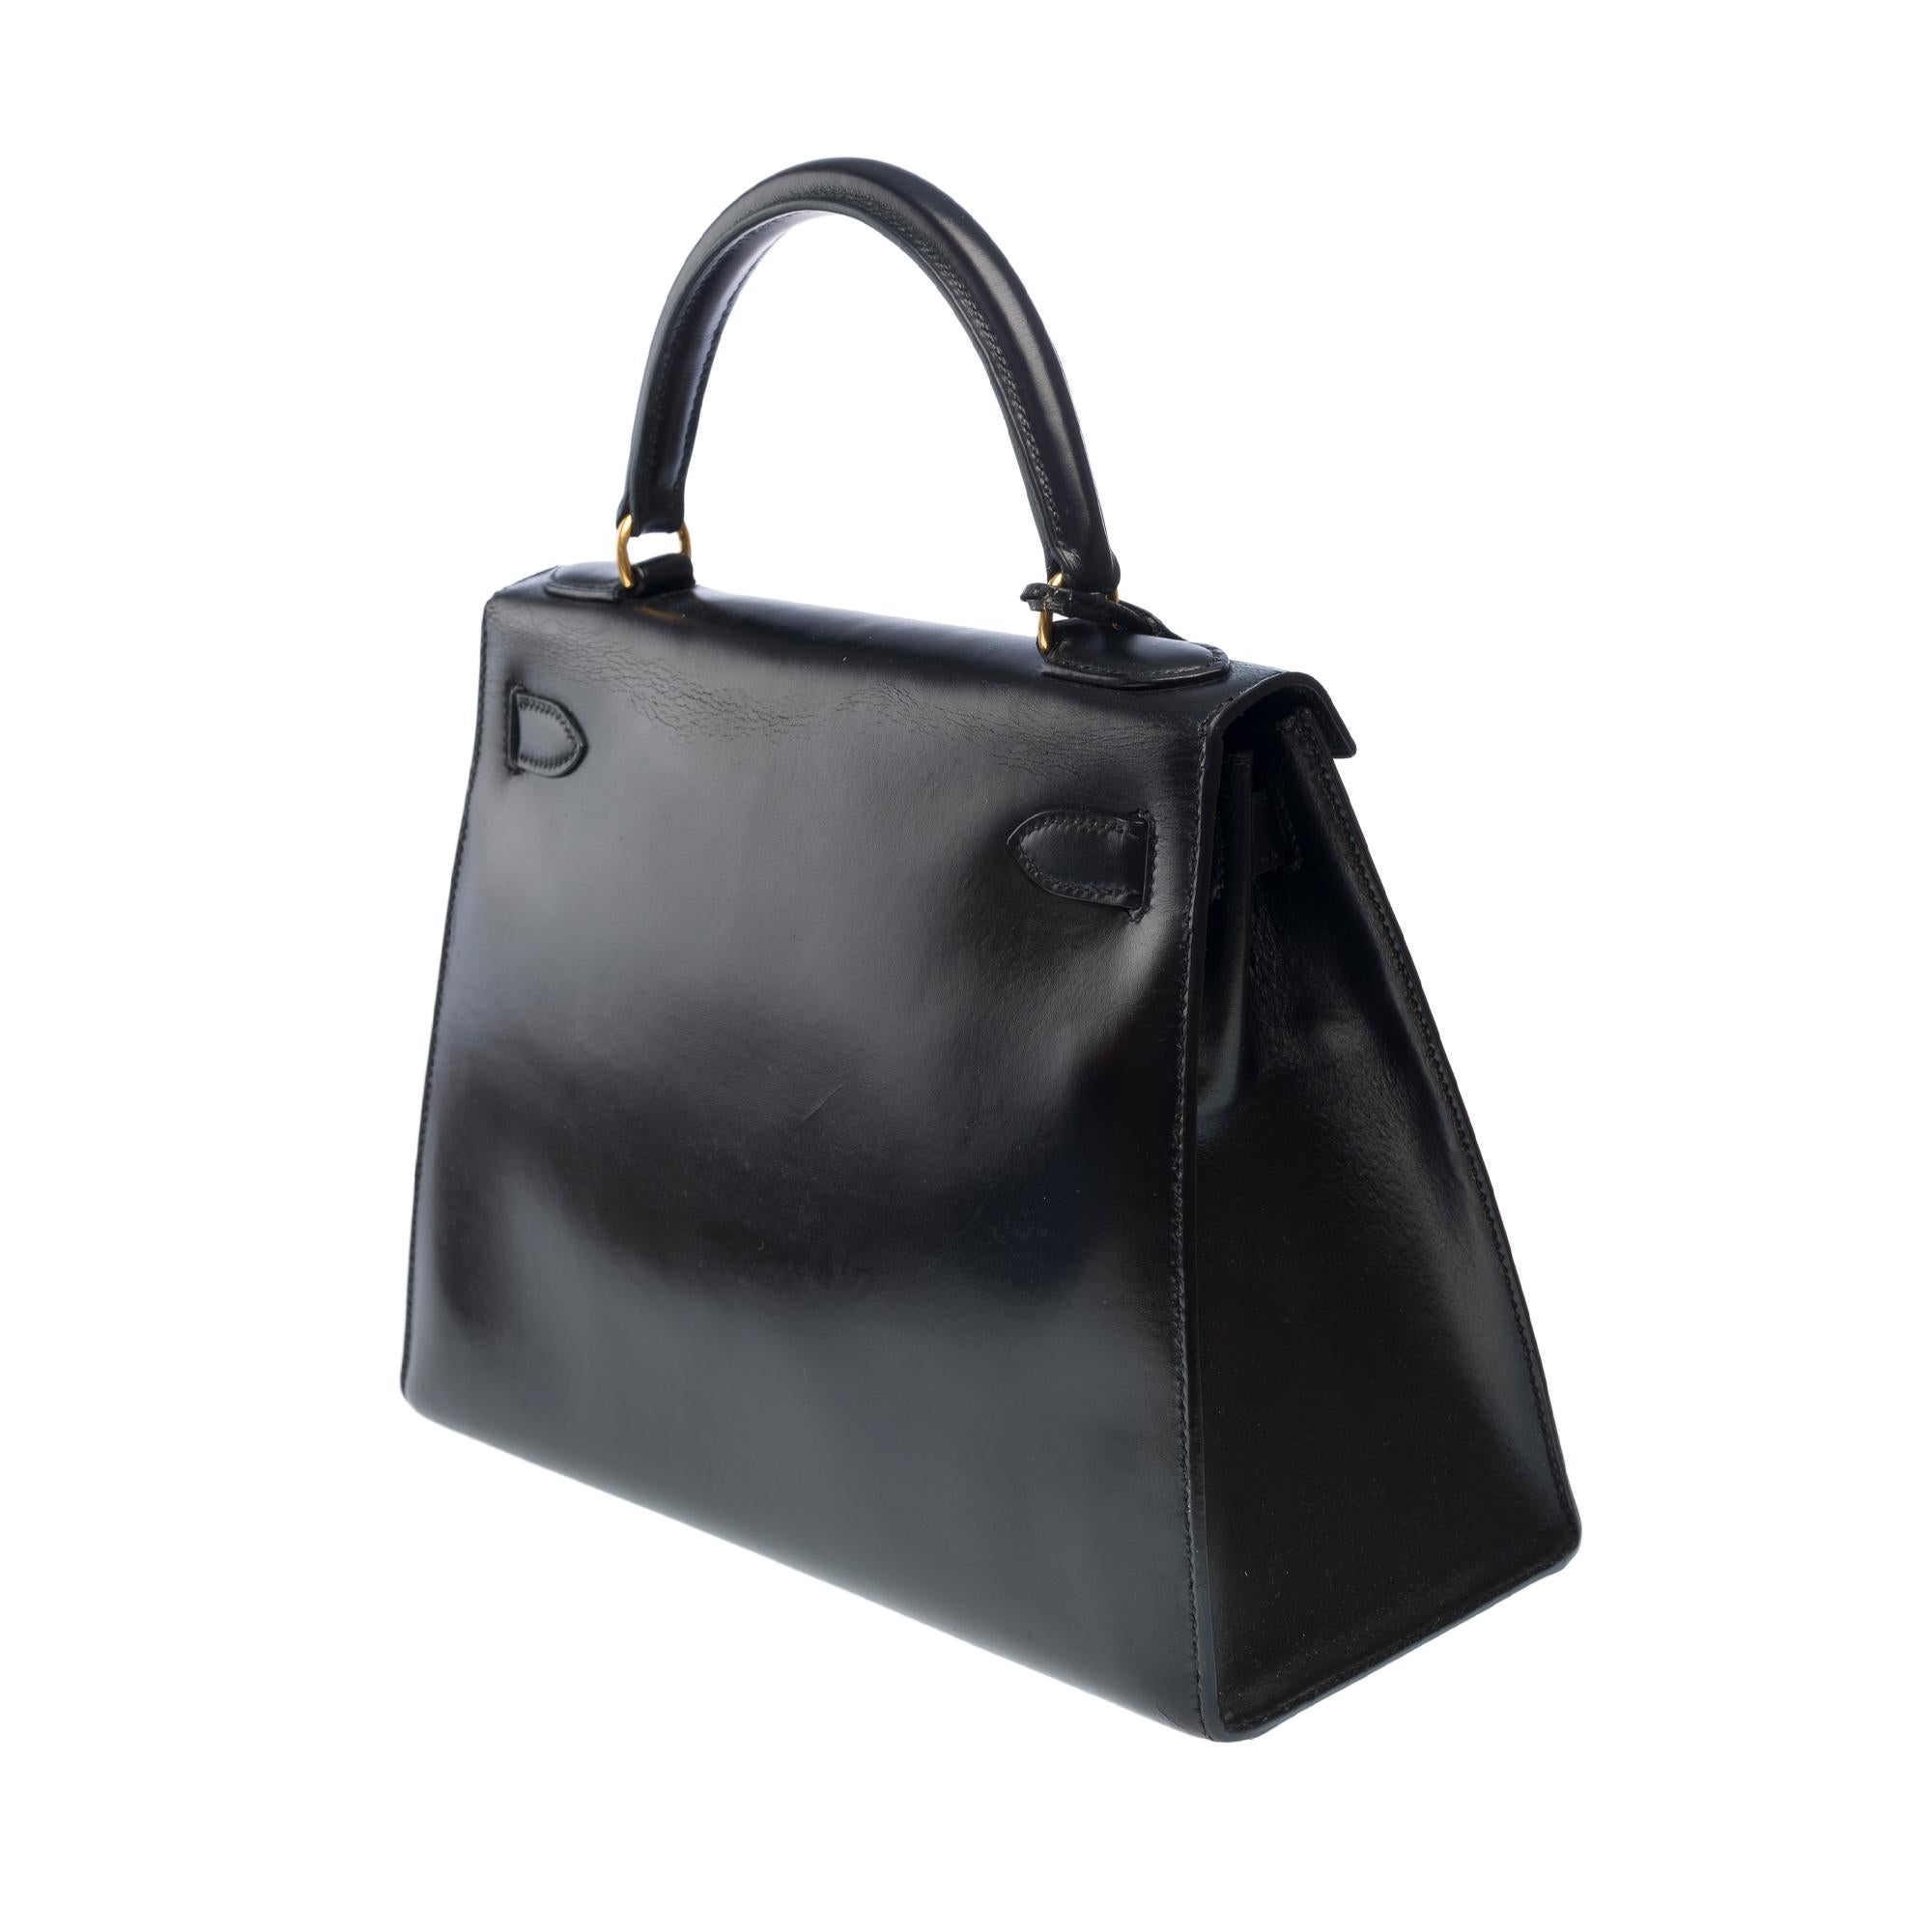 Hermes Kelly 28 sellier handbag in Black box calfskin leather, GHW For Sale 1